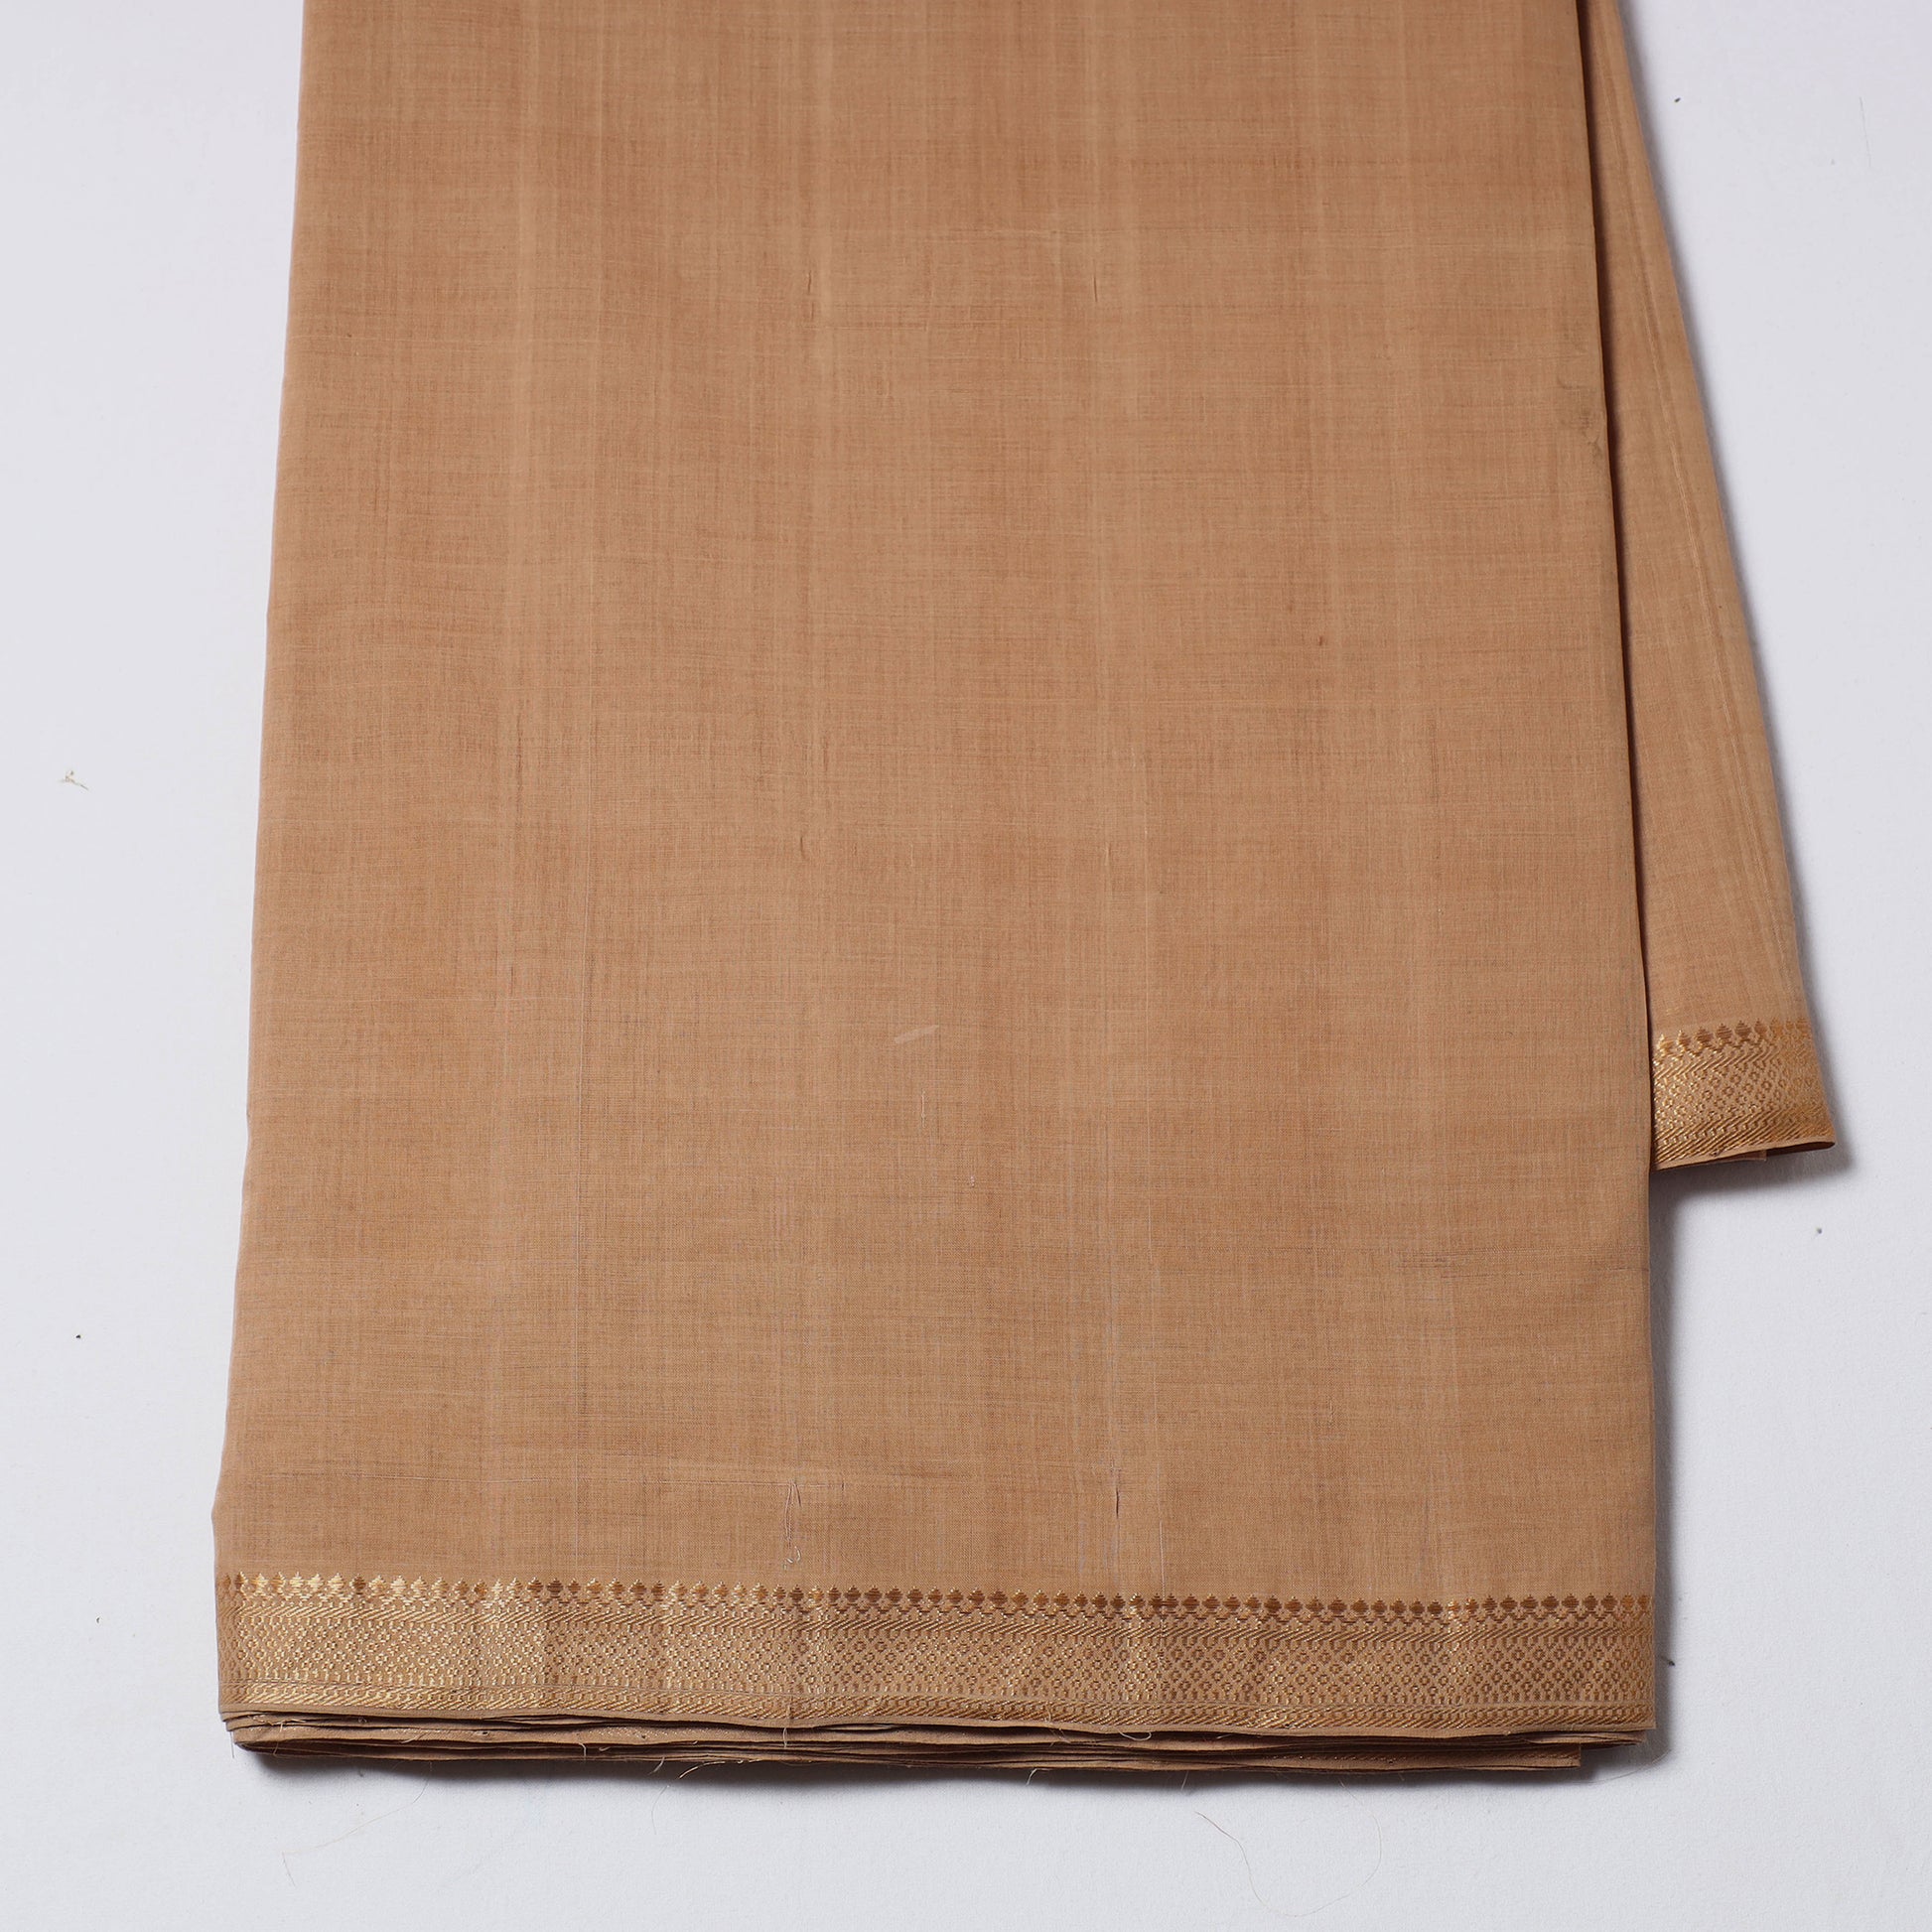 Mangalagiri Handloom Cotton Nizam Zari Border Fabric